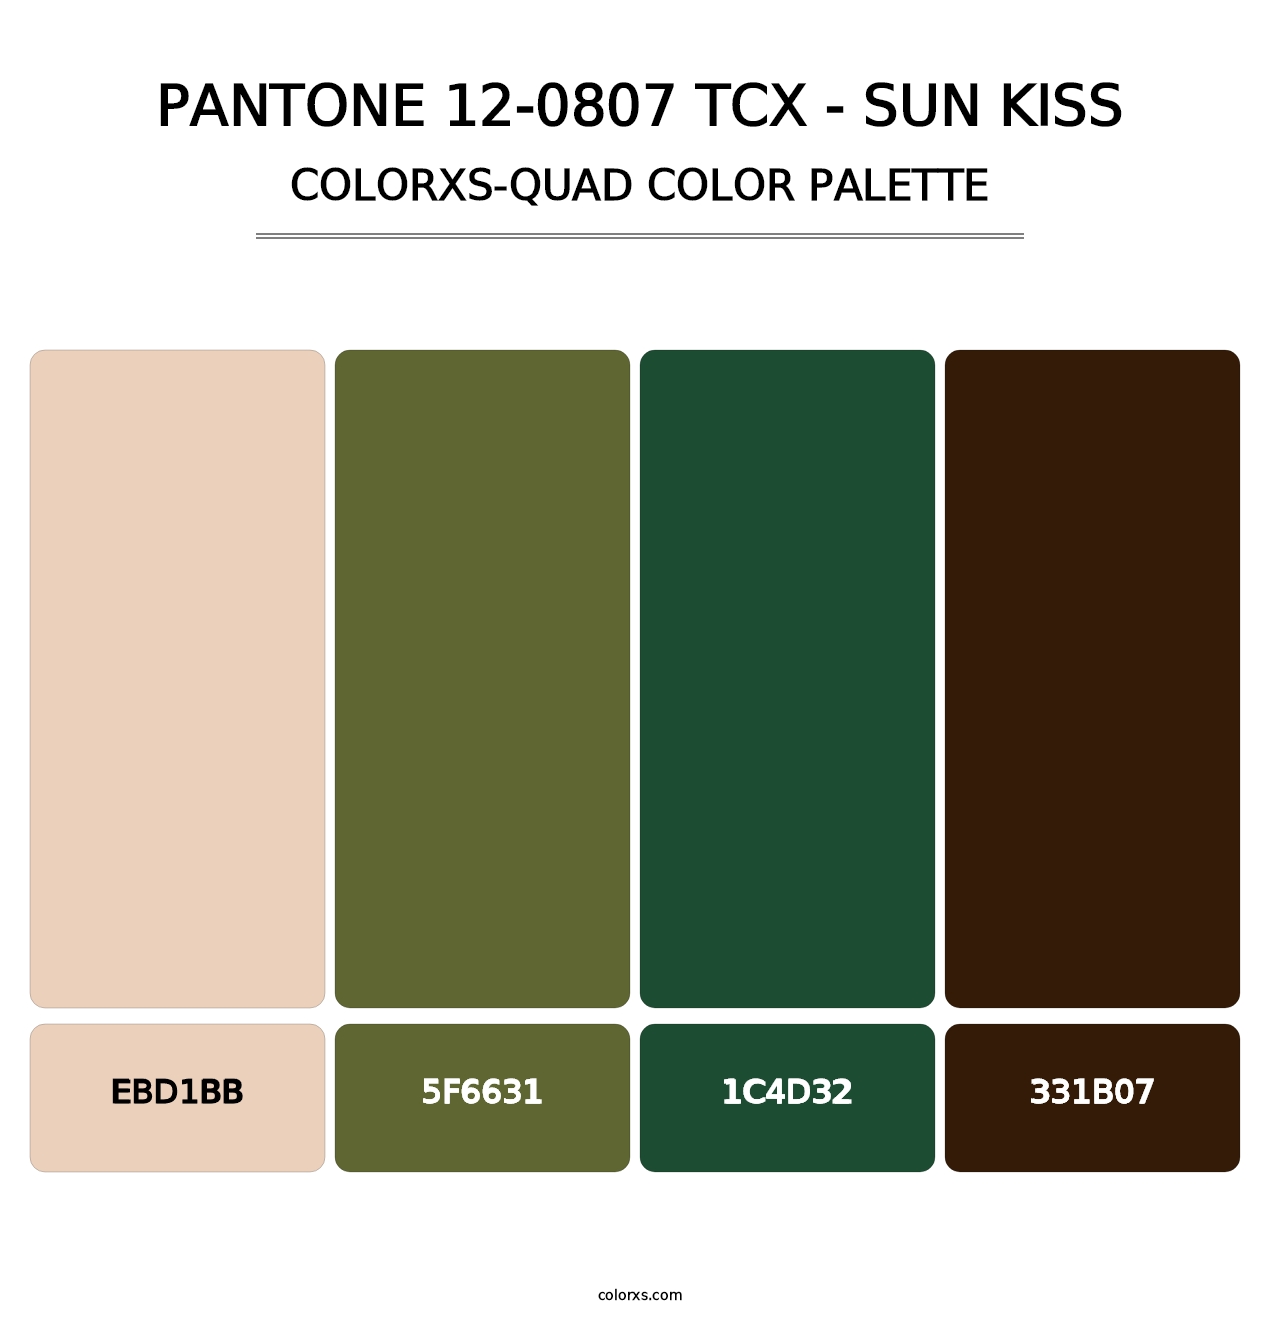 PANTONE 12-0807 TCX - Sun Kiss - Colorxs Quad Palette